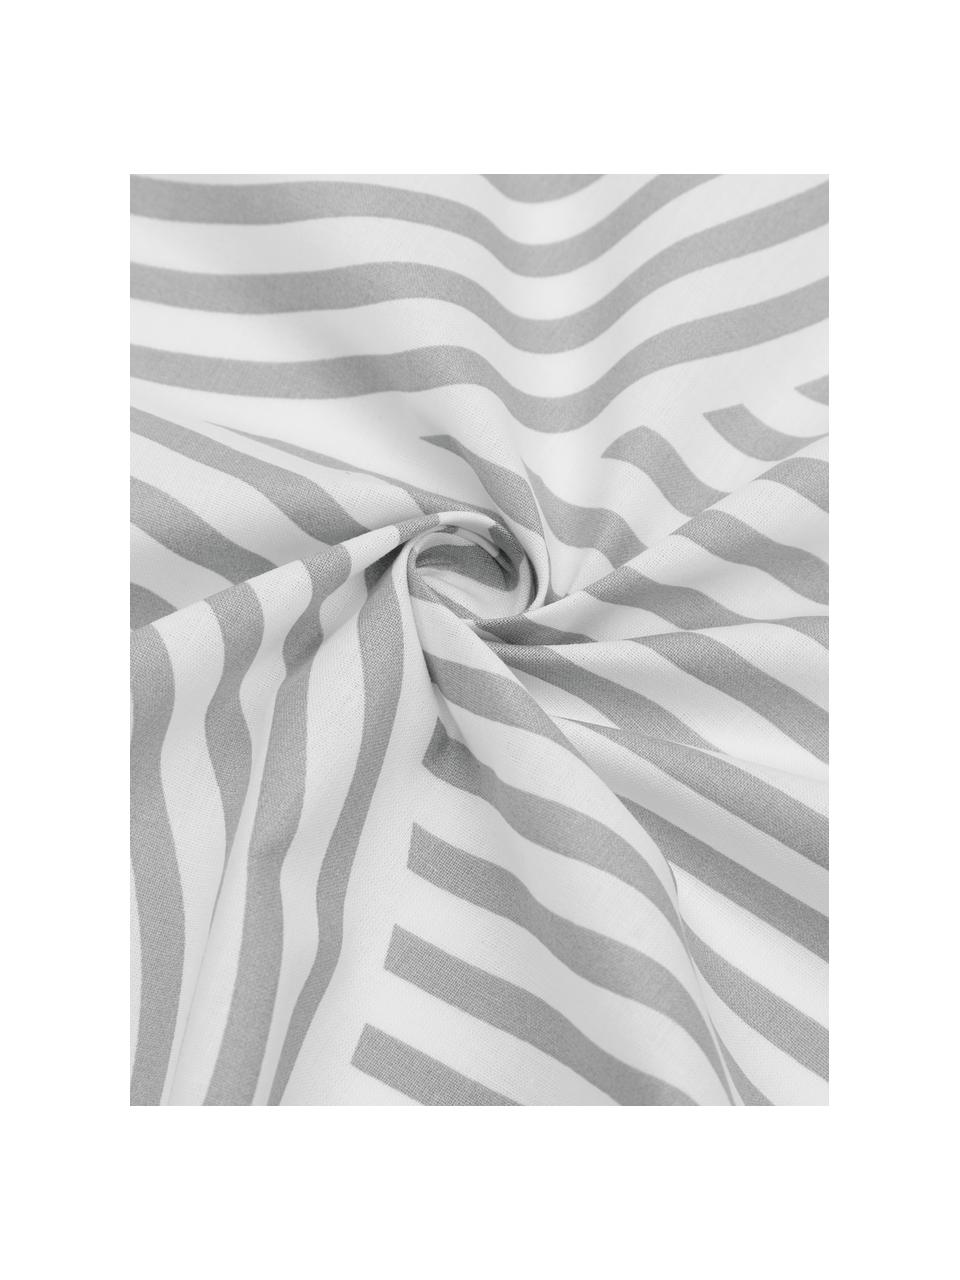 Gemusterte Baumwoll-Bettwäsche Arcs in Grau/Weiß, Webart: Renforcé Fadendichte 144 , Grau,Weiß, 135 x 200 cm + 1 Kissen 80 x 80 cm